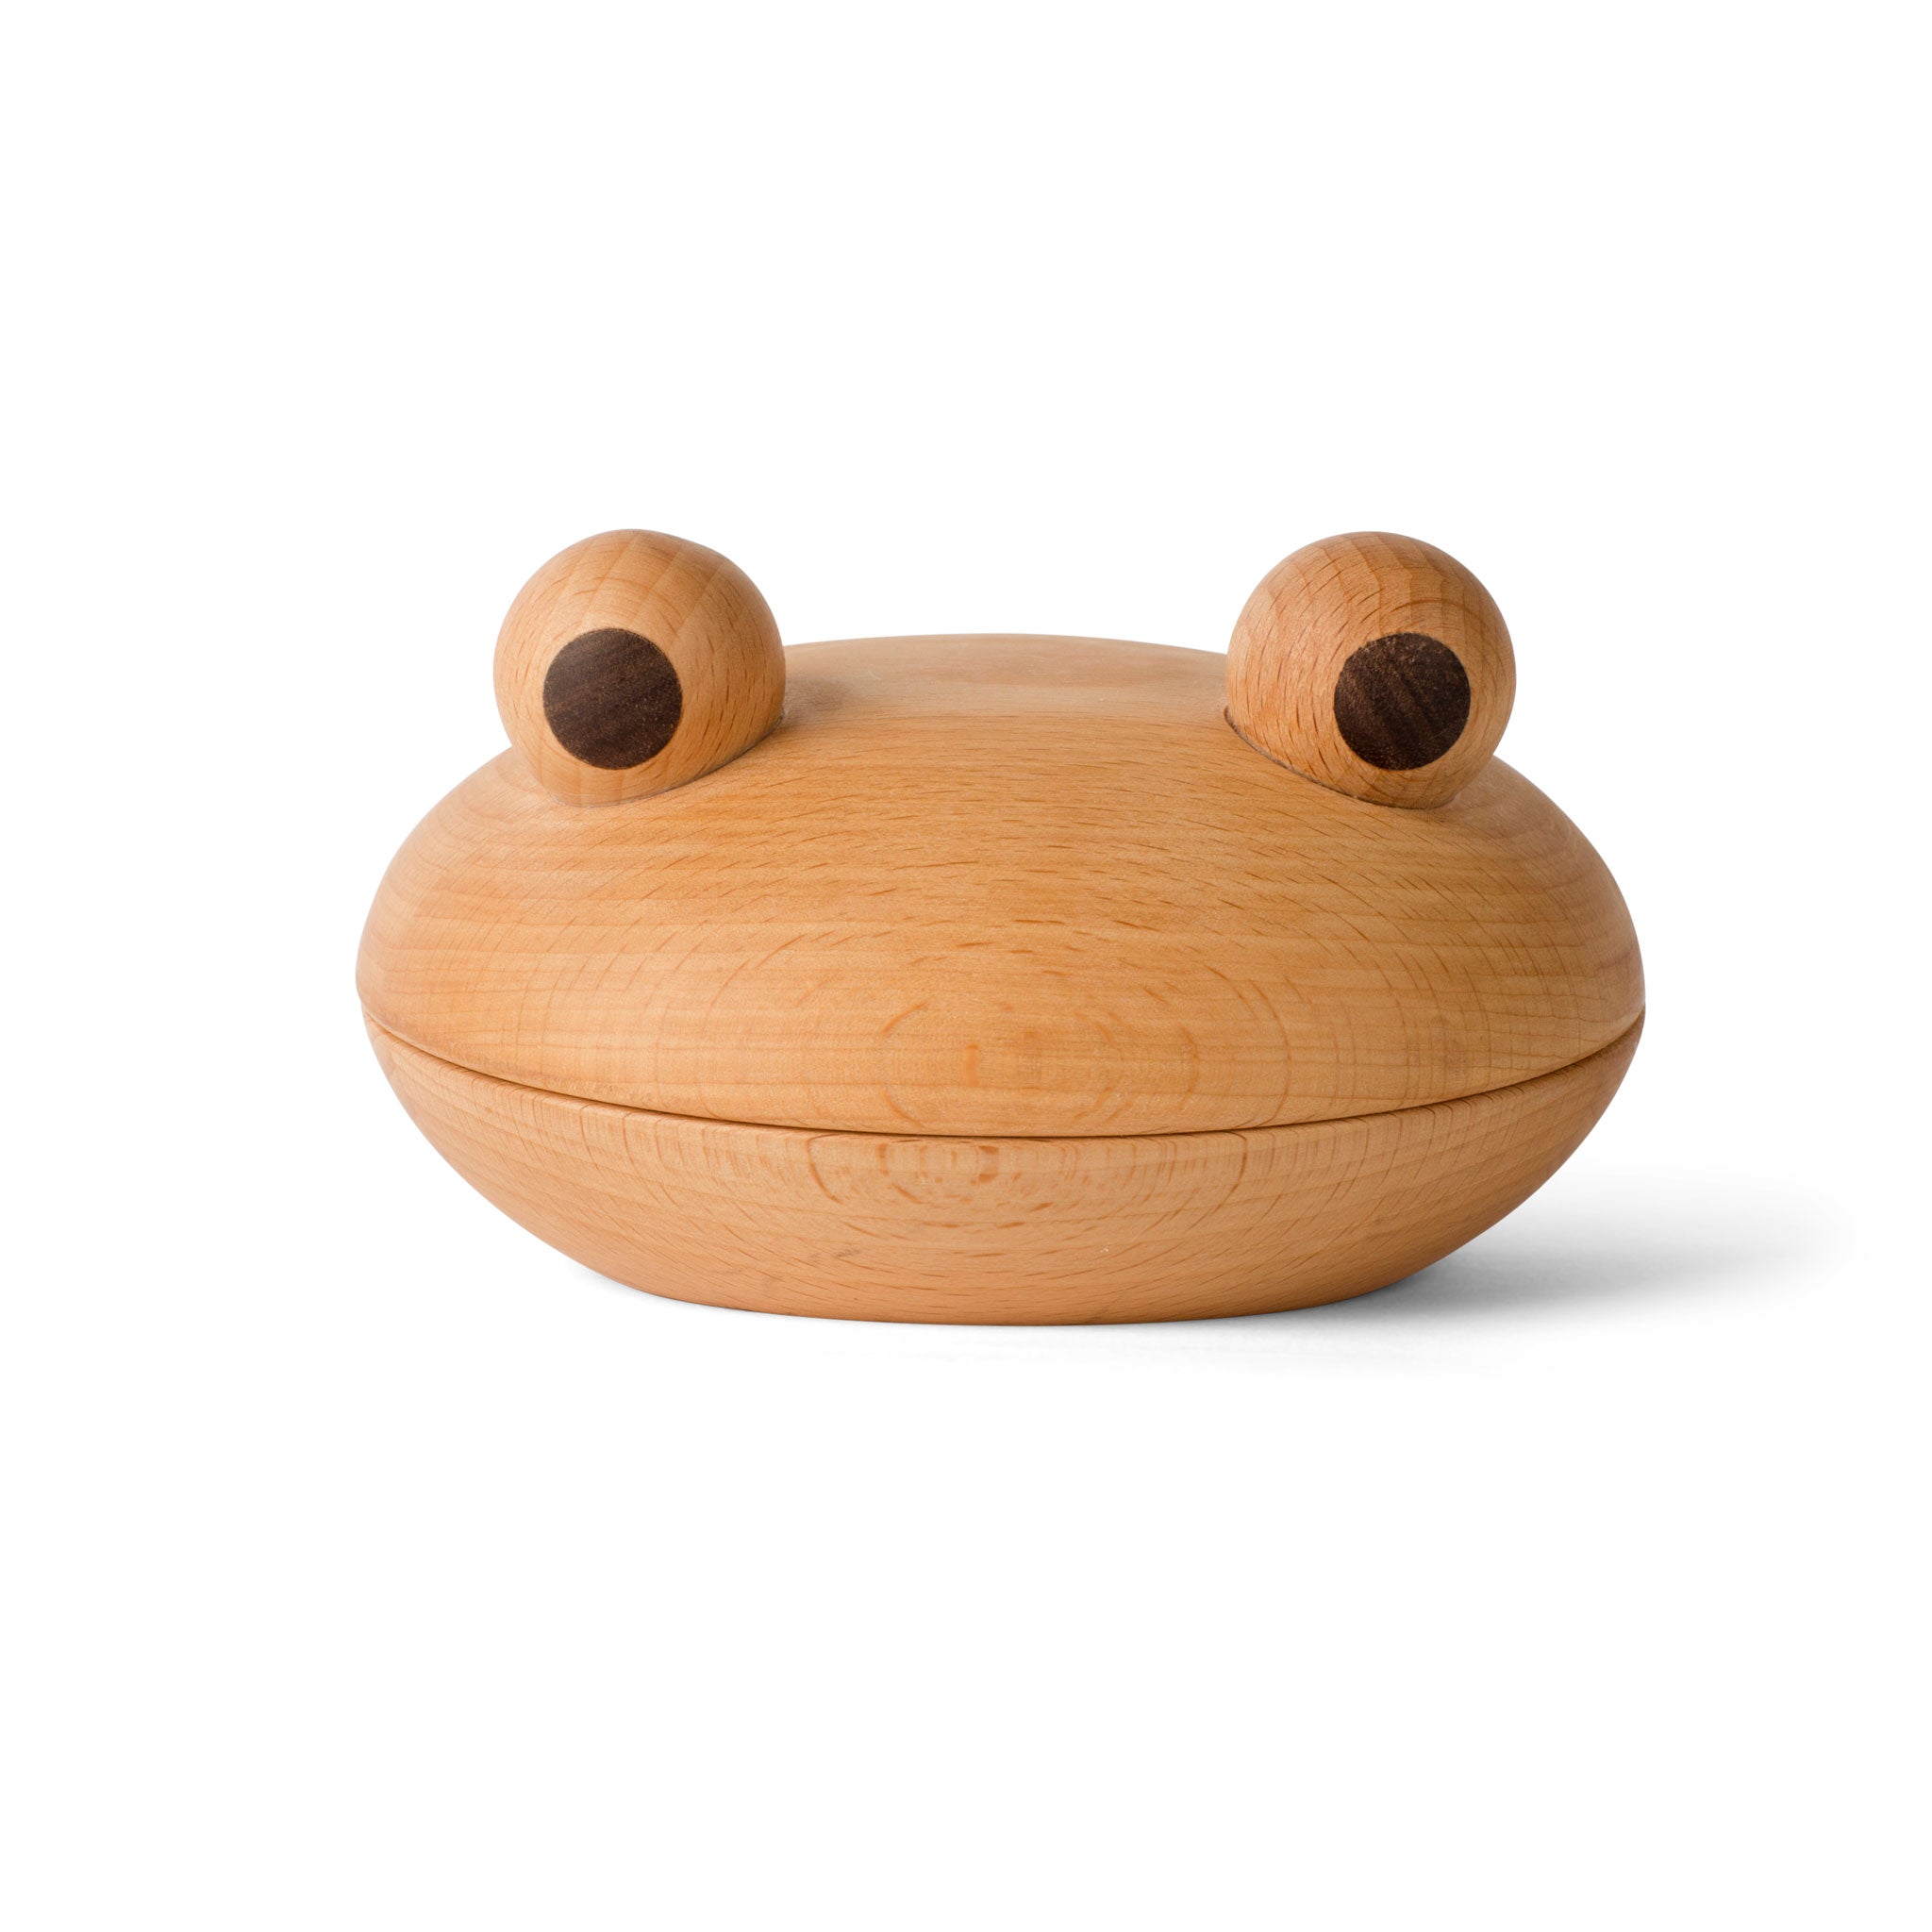 FROG BOWL | Frosch DOSE aus Holz | mencke&vagnby | Spring Copenhagen